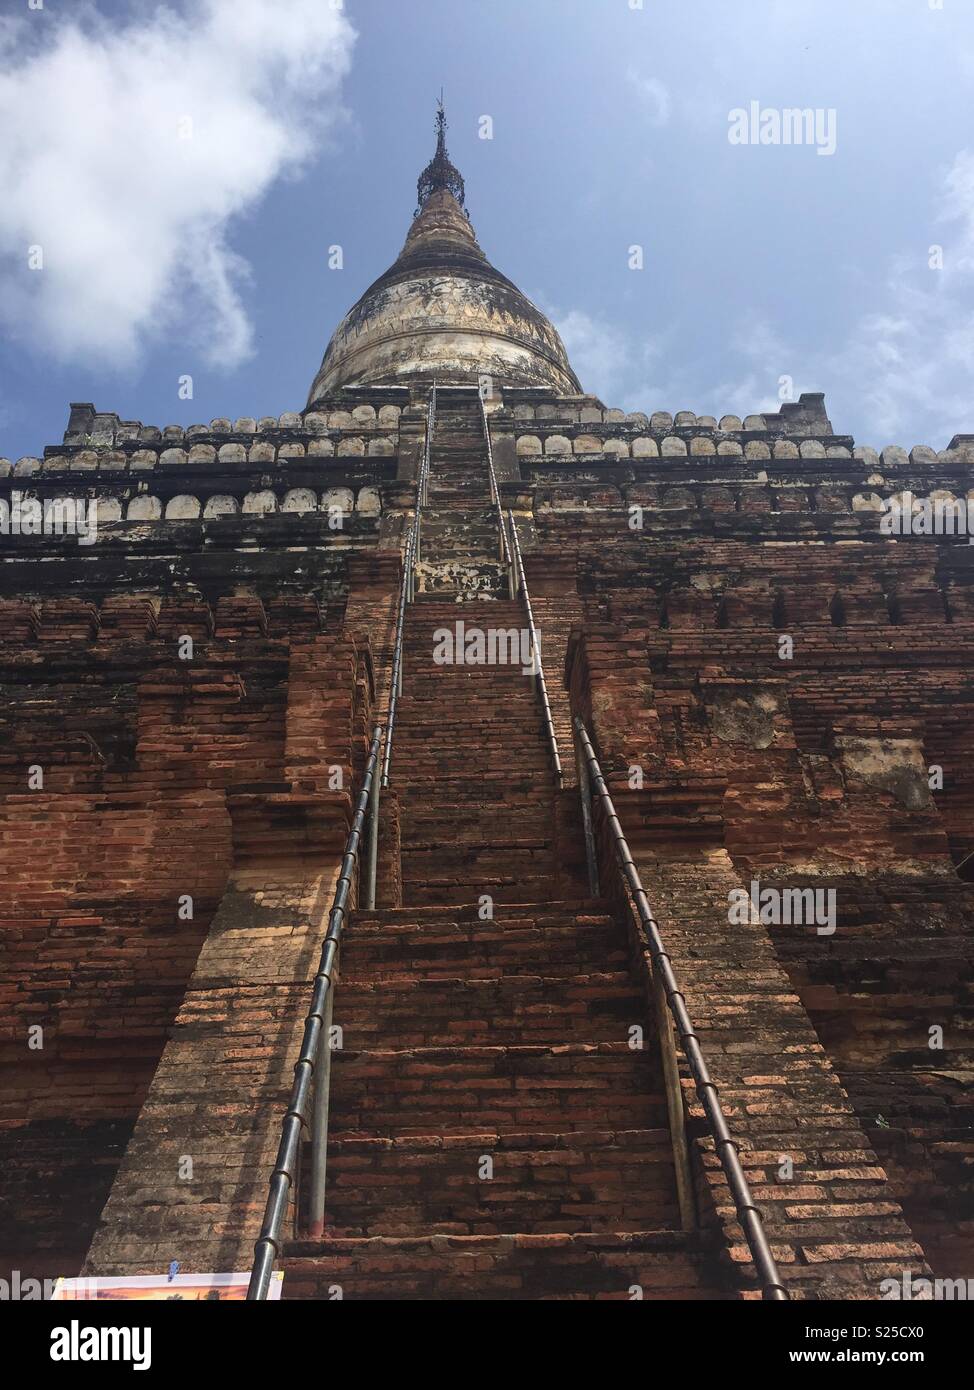 Temple of Bagan, Myanmar Stock Photo